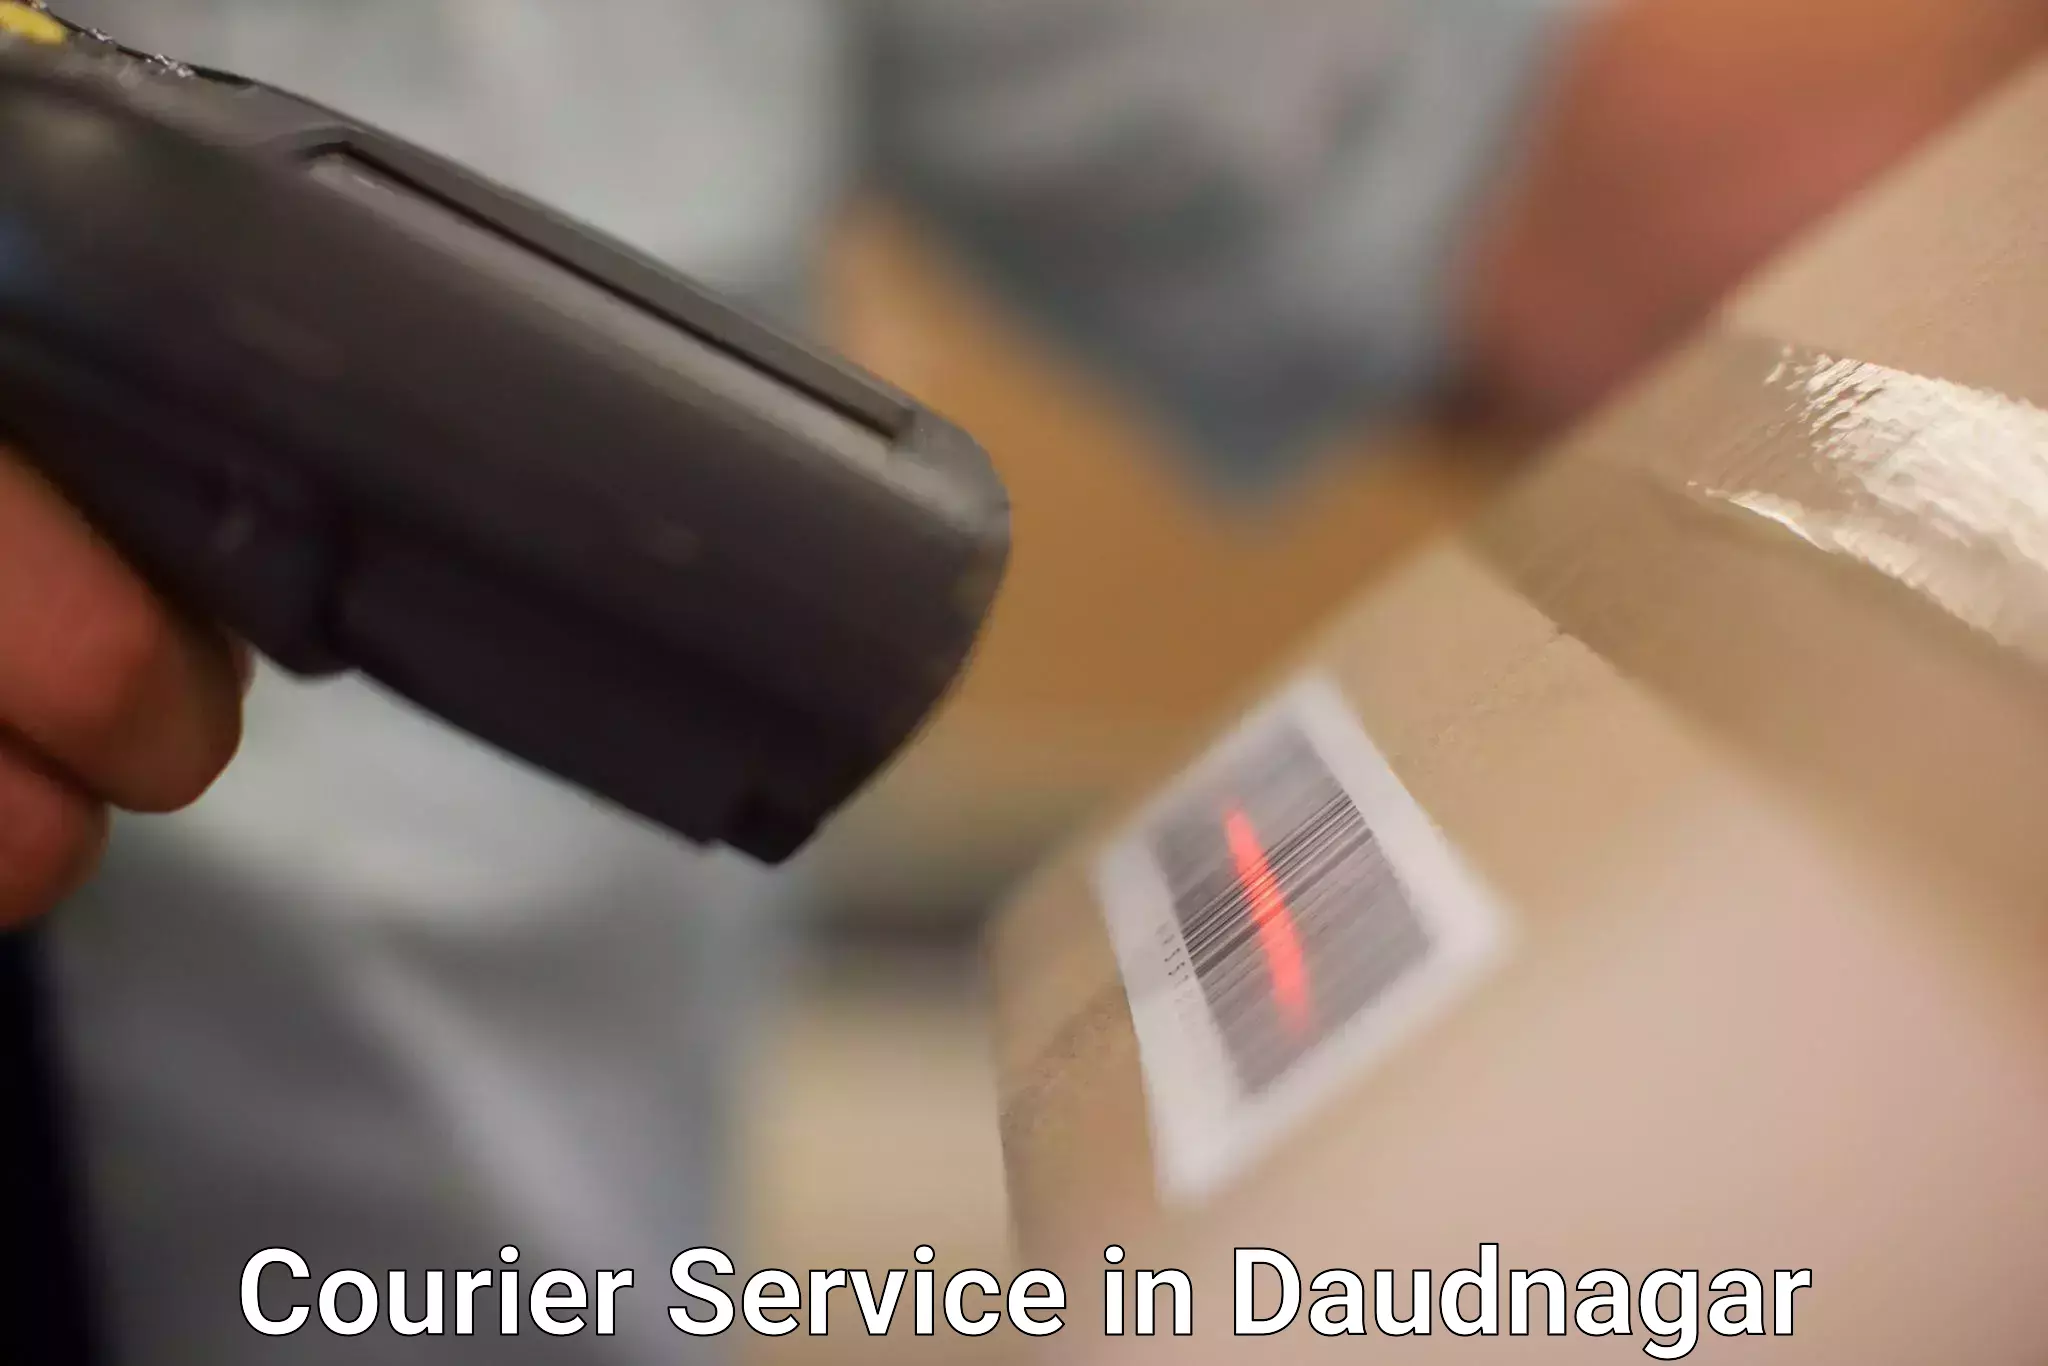 Customer-centric shipping in Daudnagar